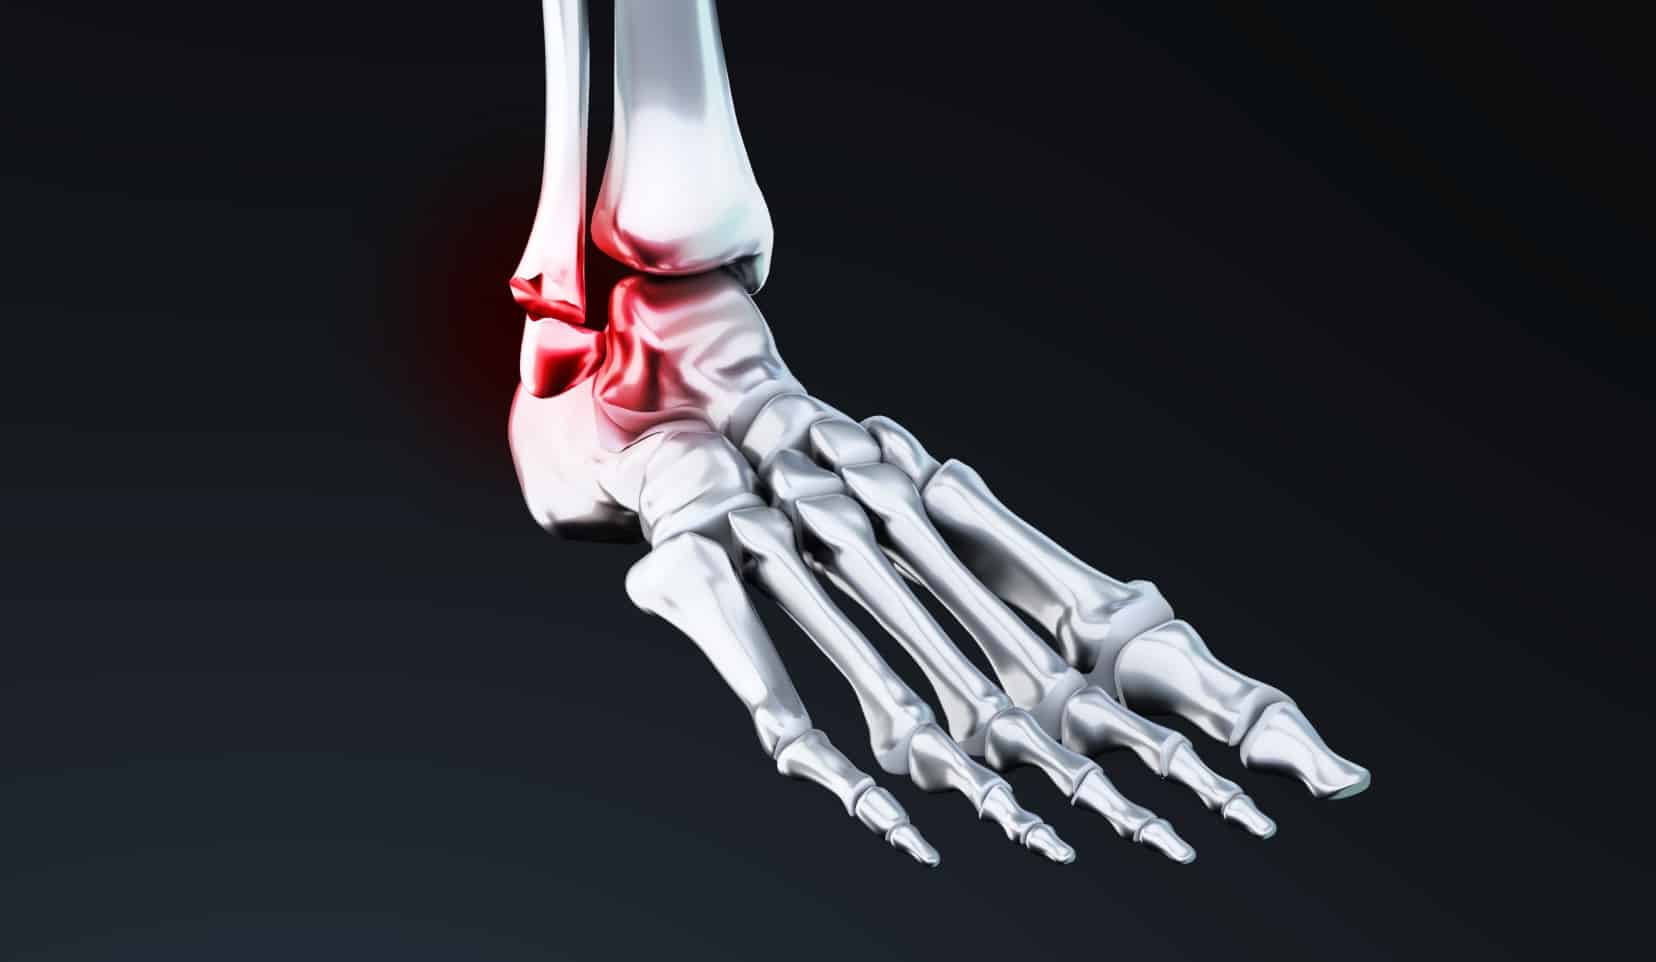 Chirugies de la cheville : orthopédiste | orthopédiste cheville | Bois-Guillaume | Dr Polle